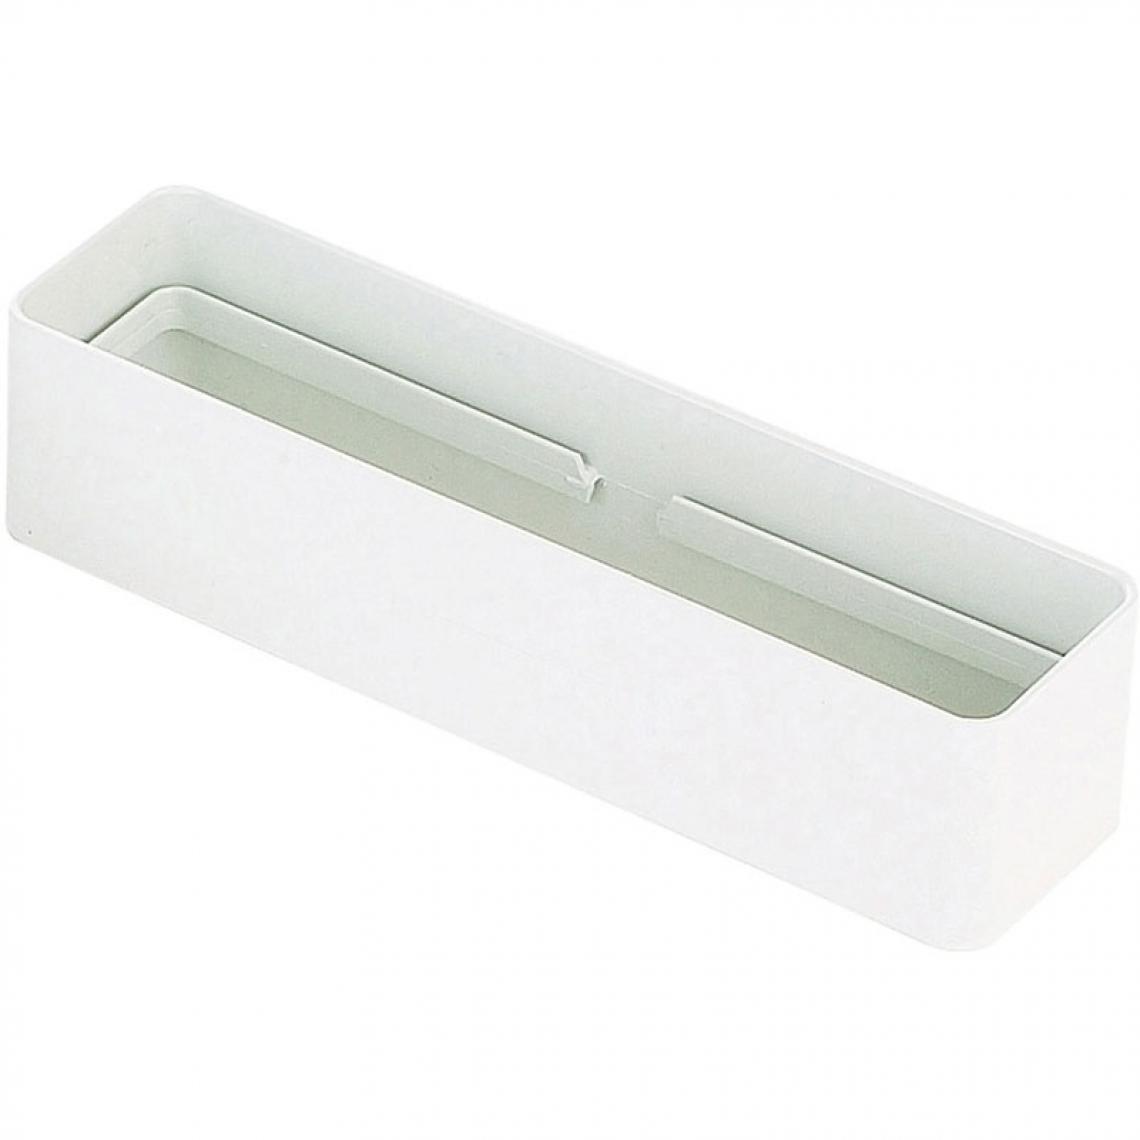 Unelvent - Manchon rectangulaire pvc - Décor : Blanc - Section : 55 x 220 mm - Matériau : PVC - UNELVENT - Grille d'aération